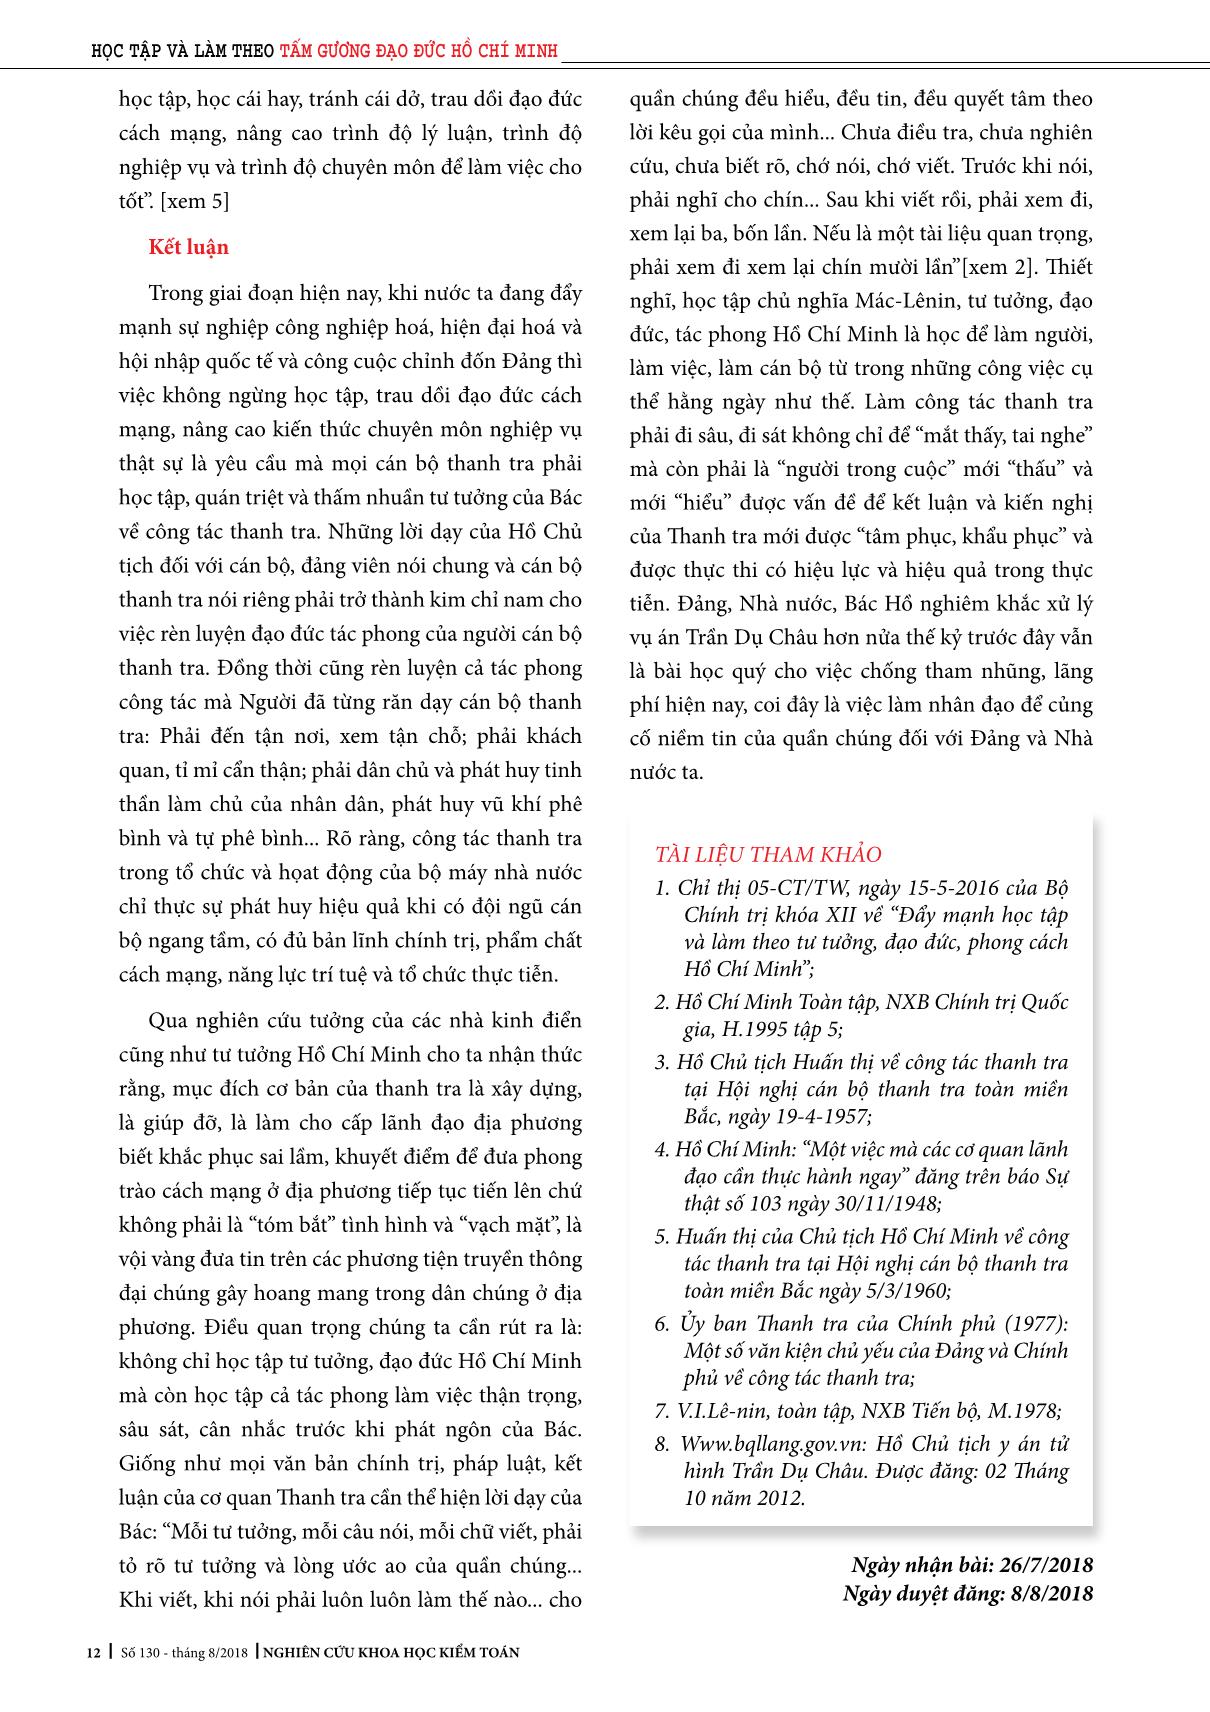 Tư tưởng Hồ Chí Minh về công tác thanh tra trang 7